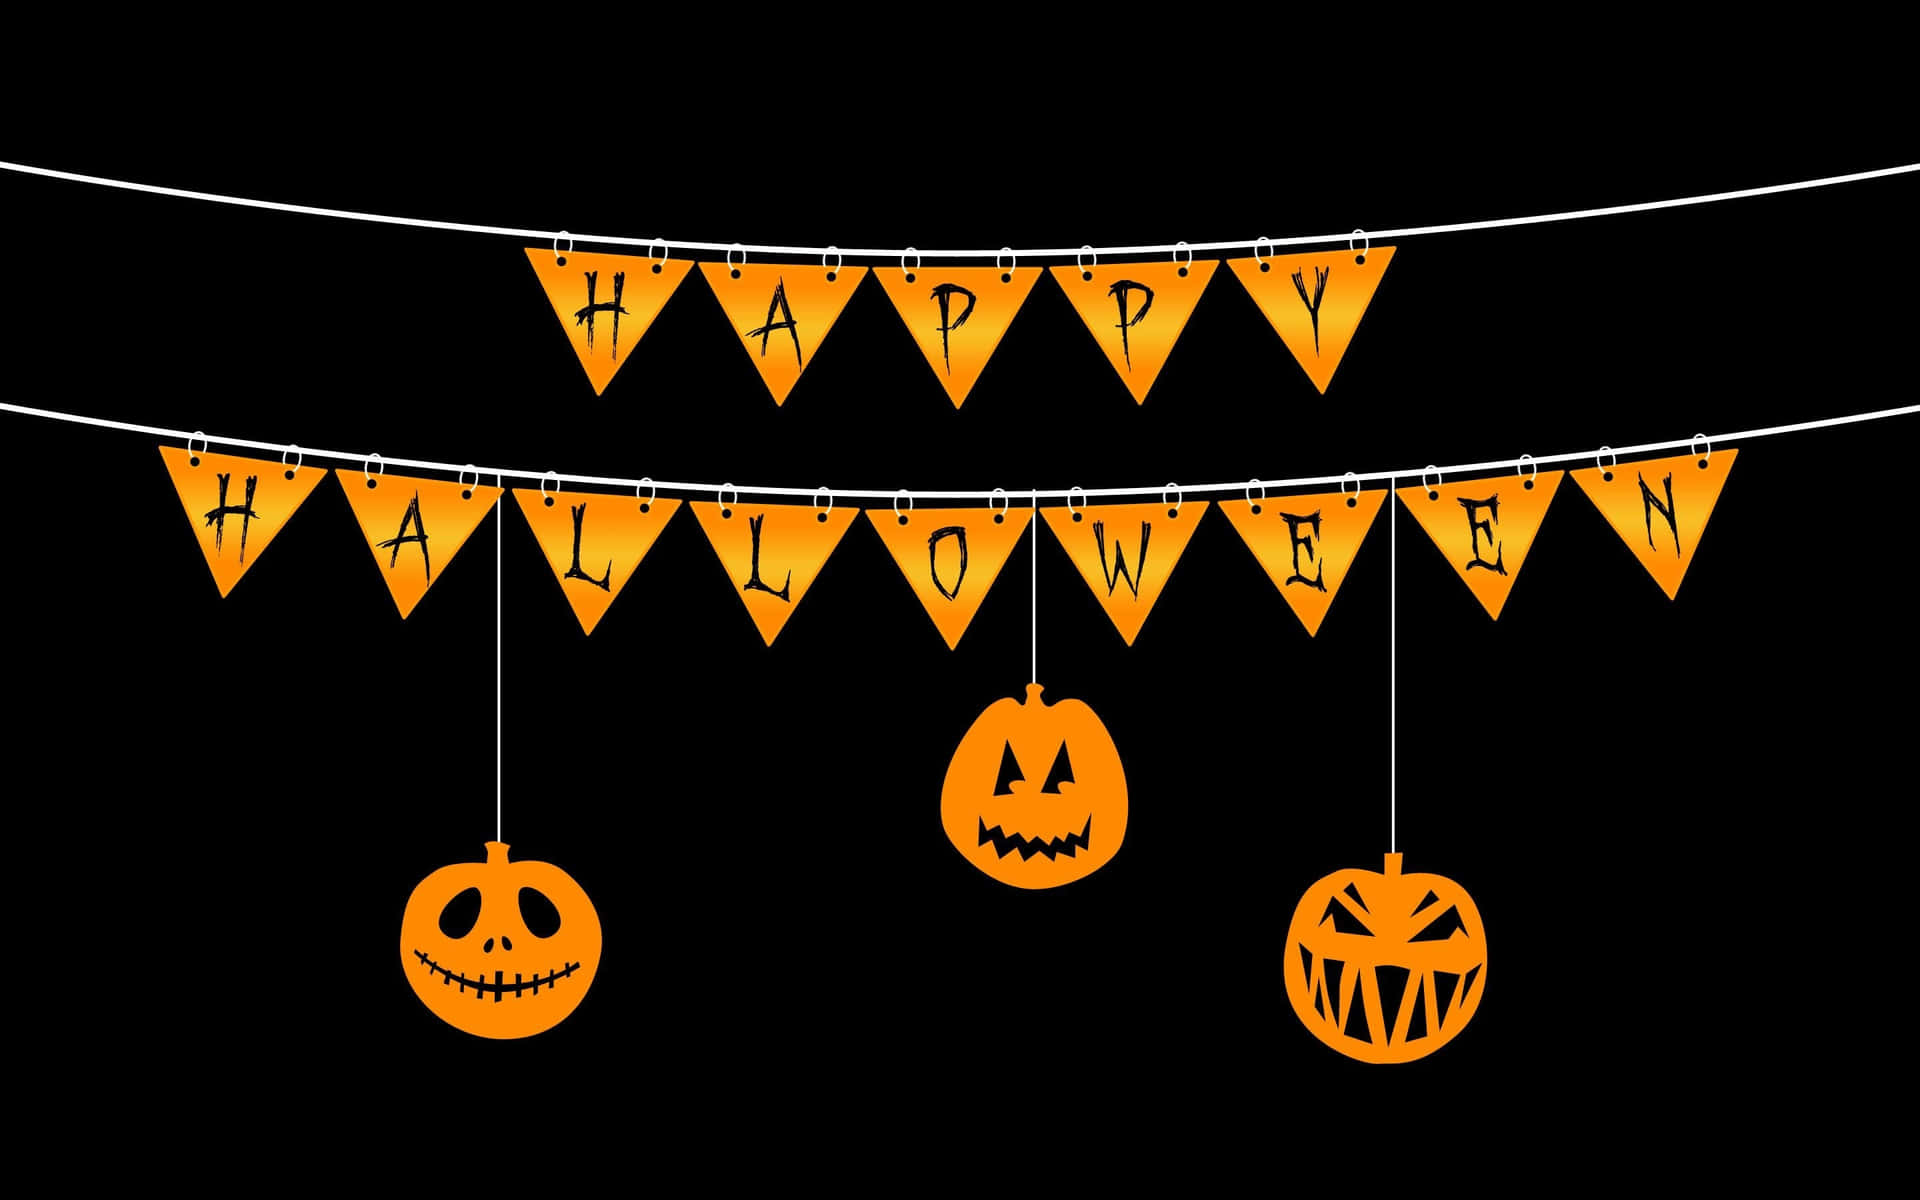 Feliceimmagine Di Banner Per La Festa Di Halloween